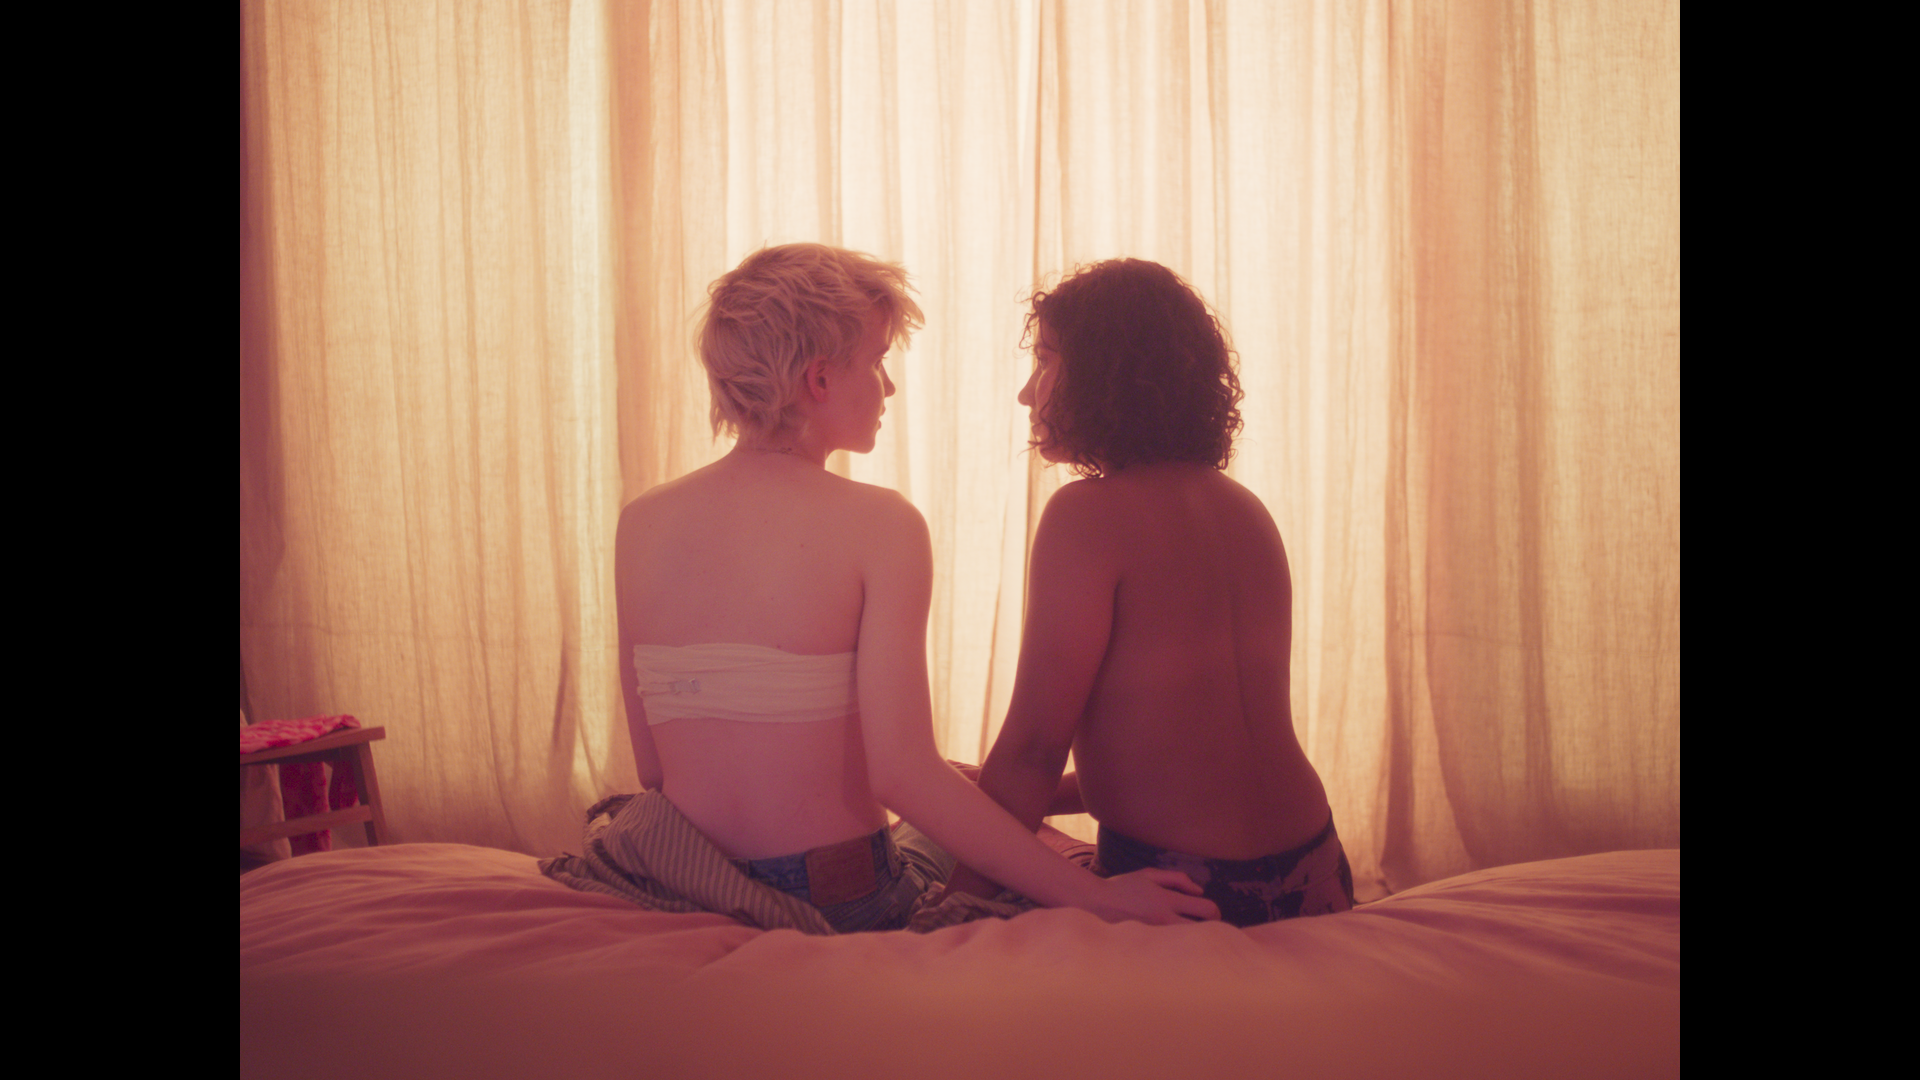 Zwei junge Menschen sitzen ohne Oberteil von der Kamera abgewandt auf einem Bett. Eine Person hat Verbände im Brustbereich.